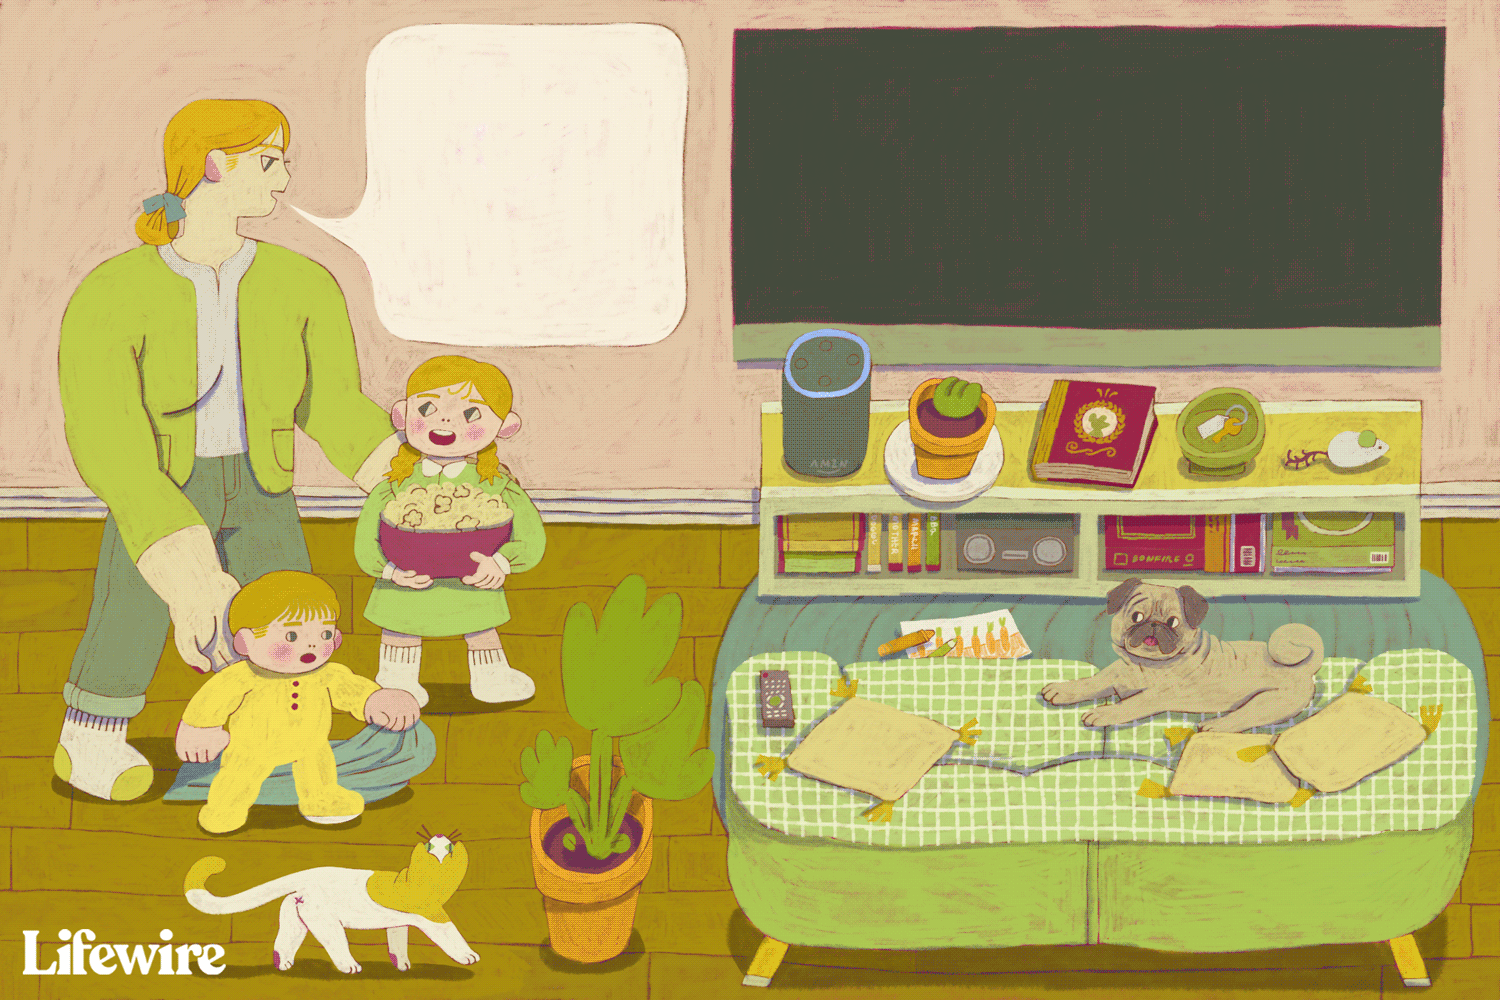 Ilustração animada de um pai perguntando "Alexa, peça ao controle remoto rápido para iniciar o roku da sala da família"